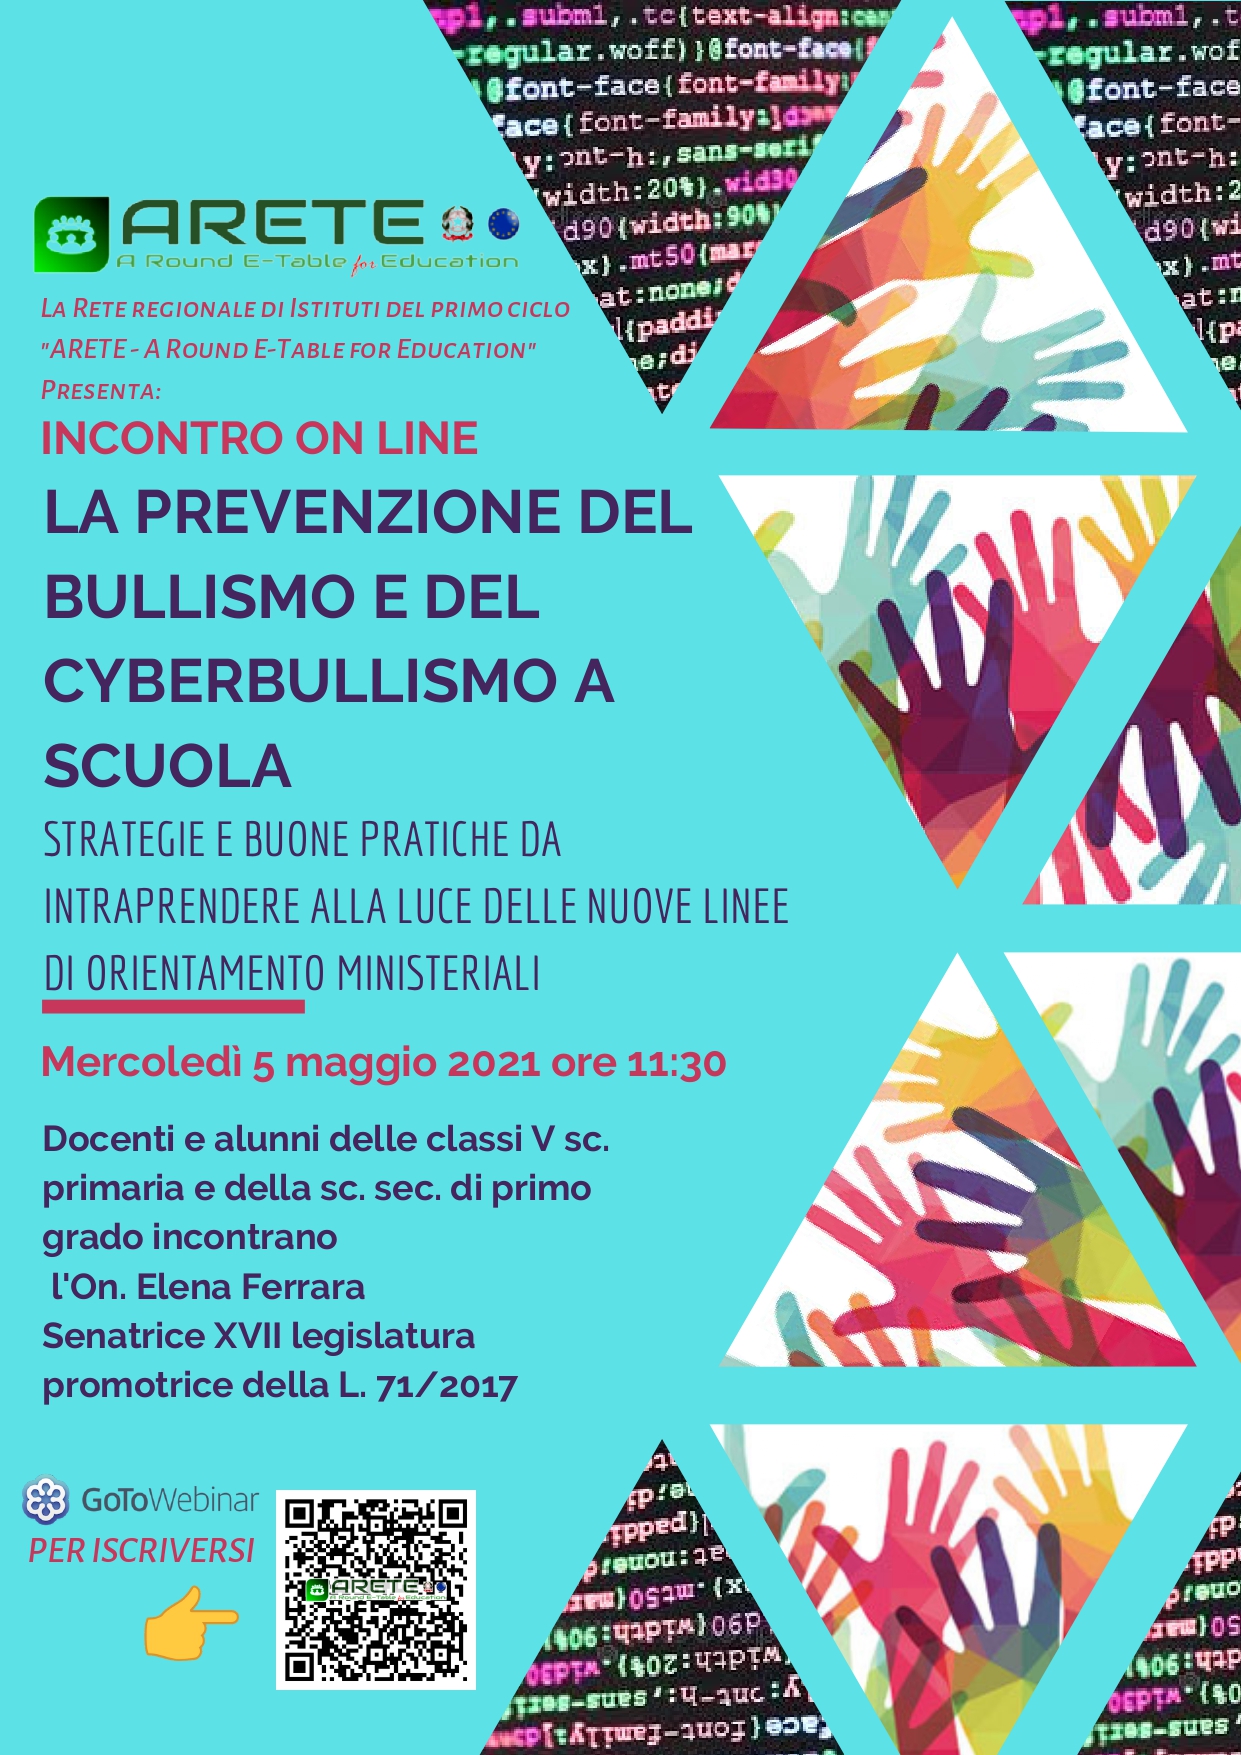 Incontro online la prevenzione del bullismo e del cyberbullismo a scuola rete ARETE